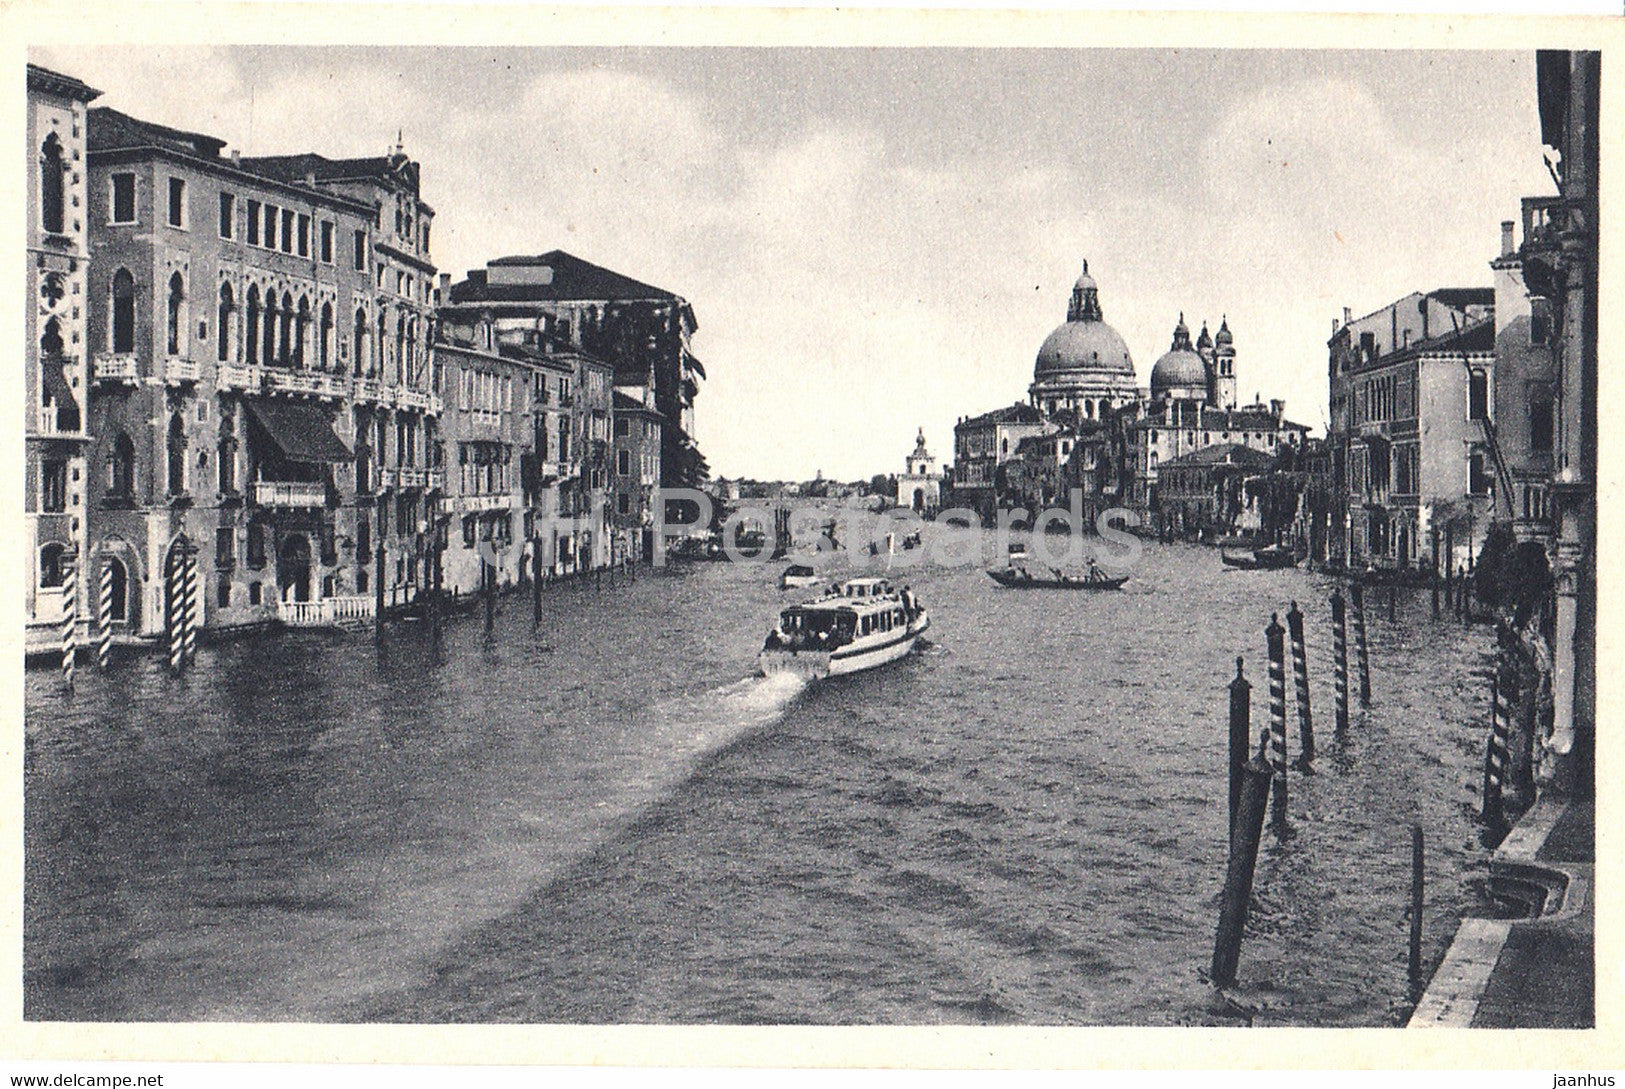 Venezia - Vendig - Venice - Canal Grande - Chiesa della Salute - The Grand Canal - old postcard - Italy - unused - JH Postcards